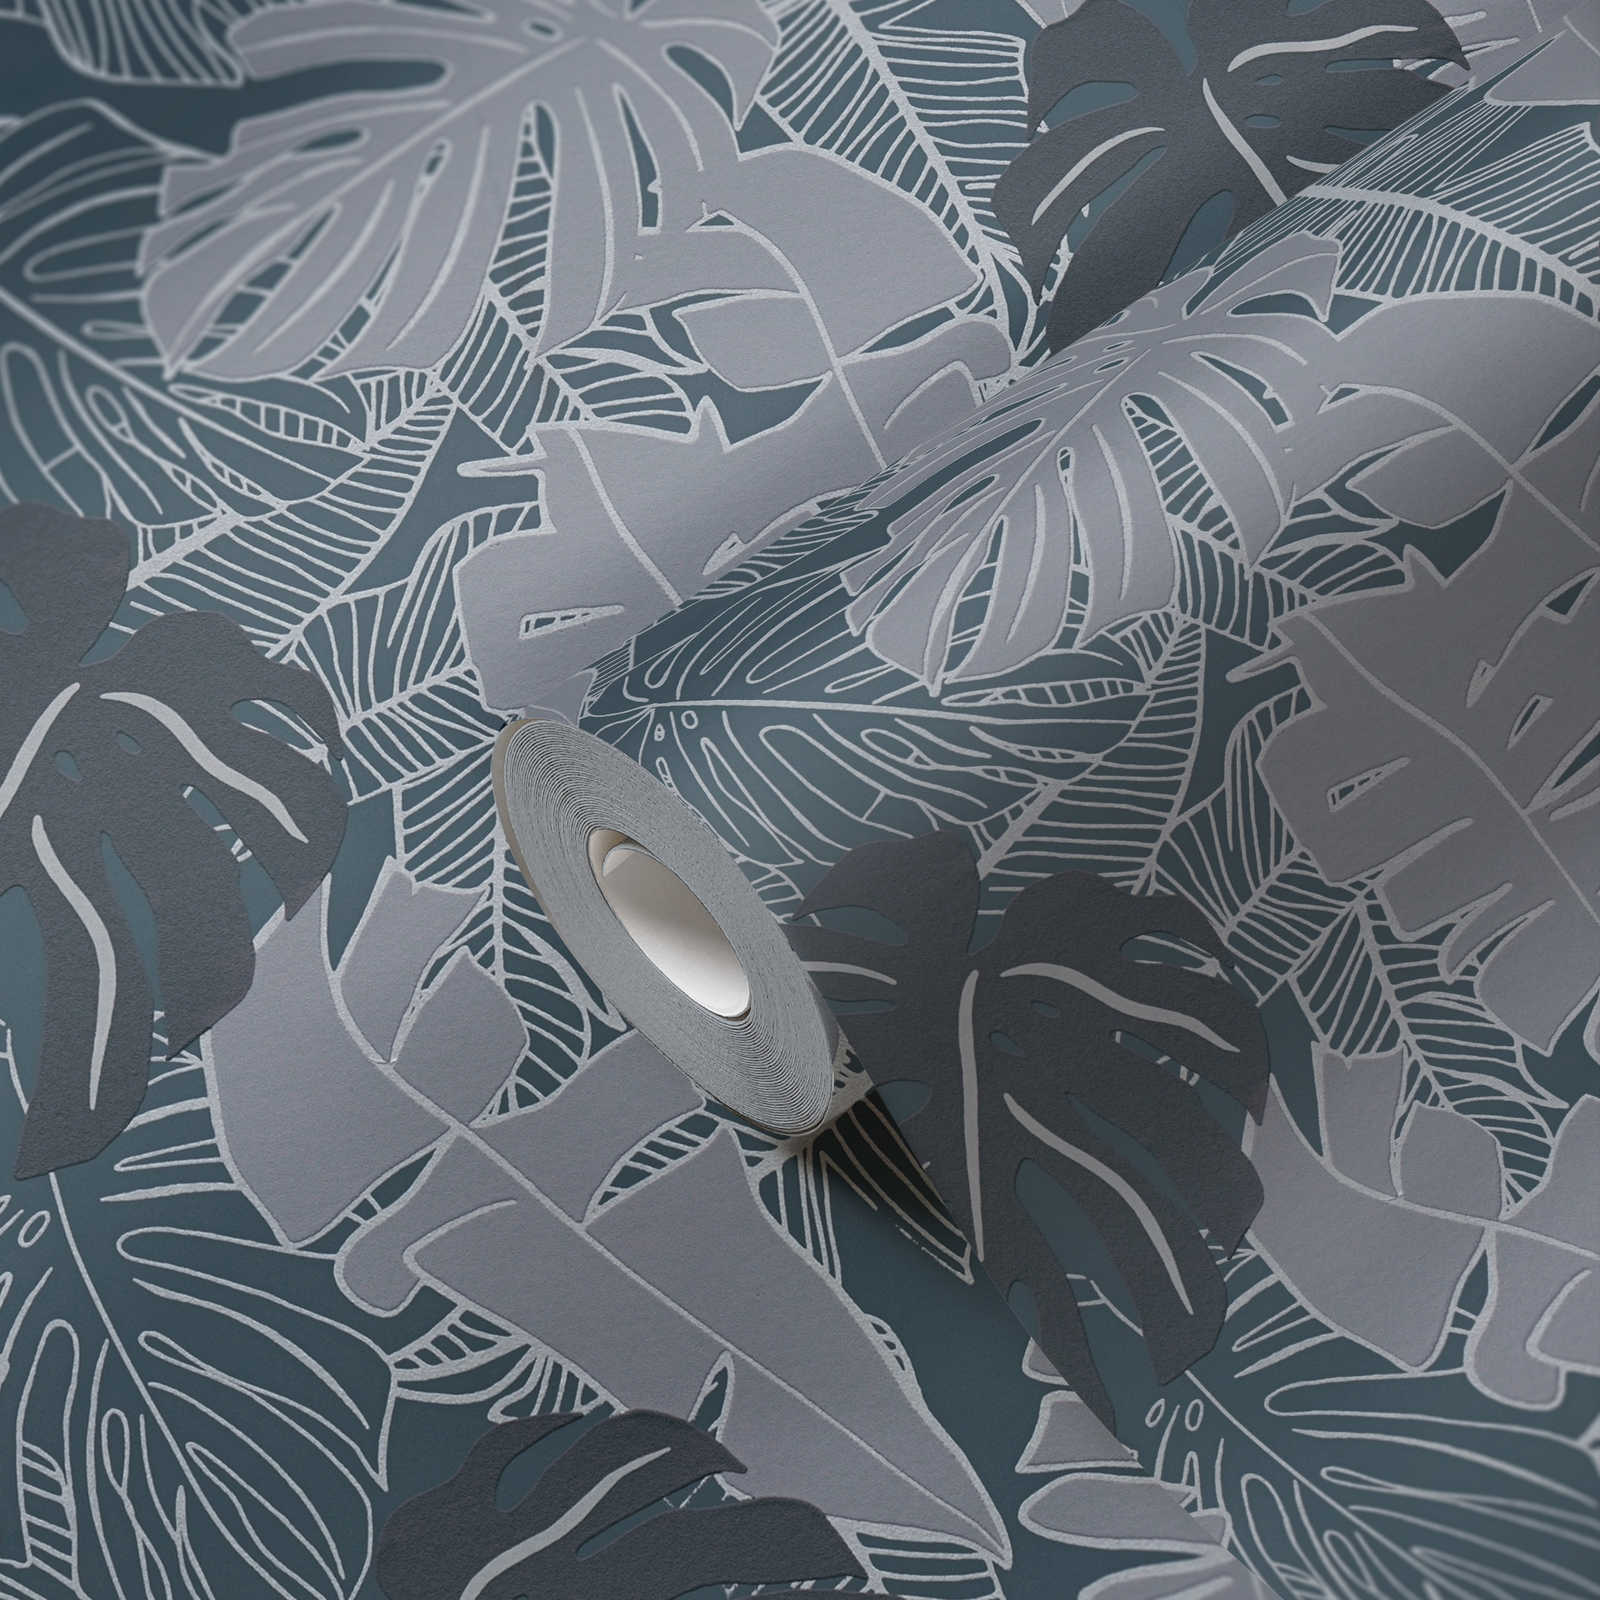             Jungle Patroon Behang met Bananenbladeren & Metallic Effect - Zwart, Grijs
        